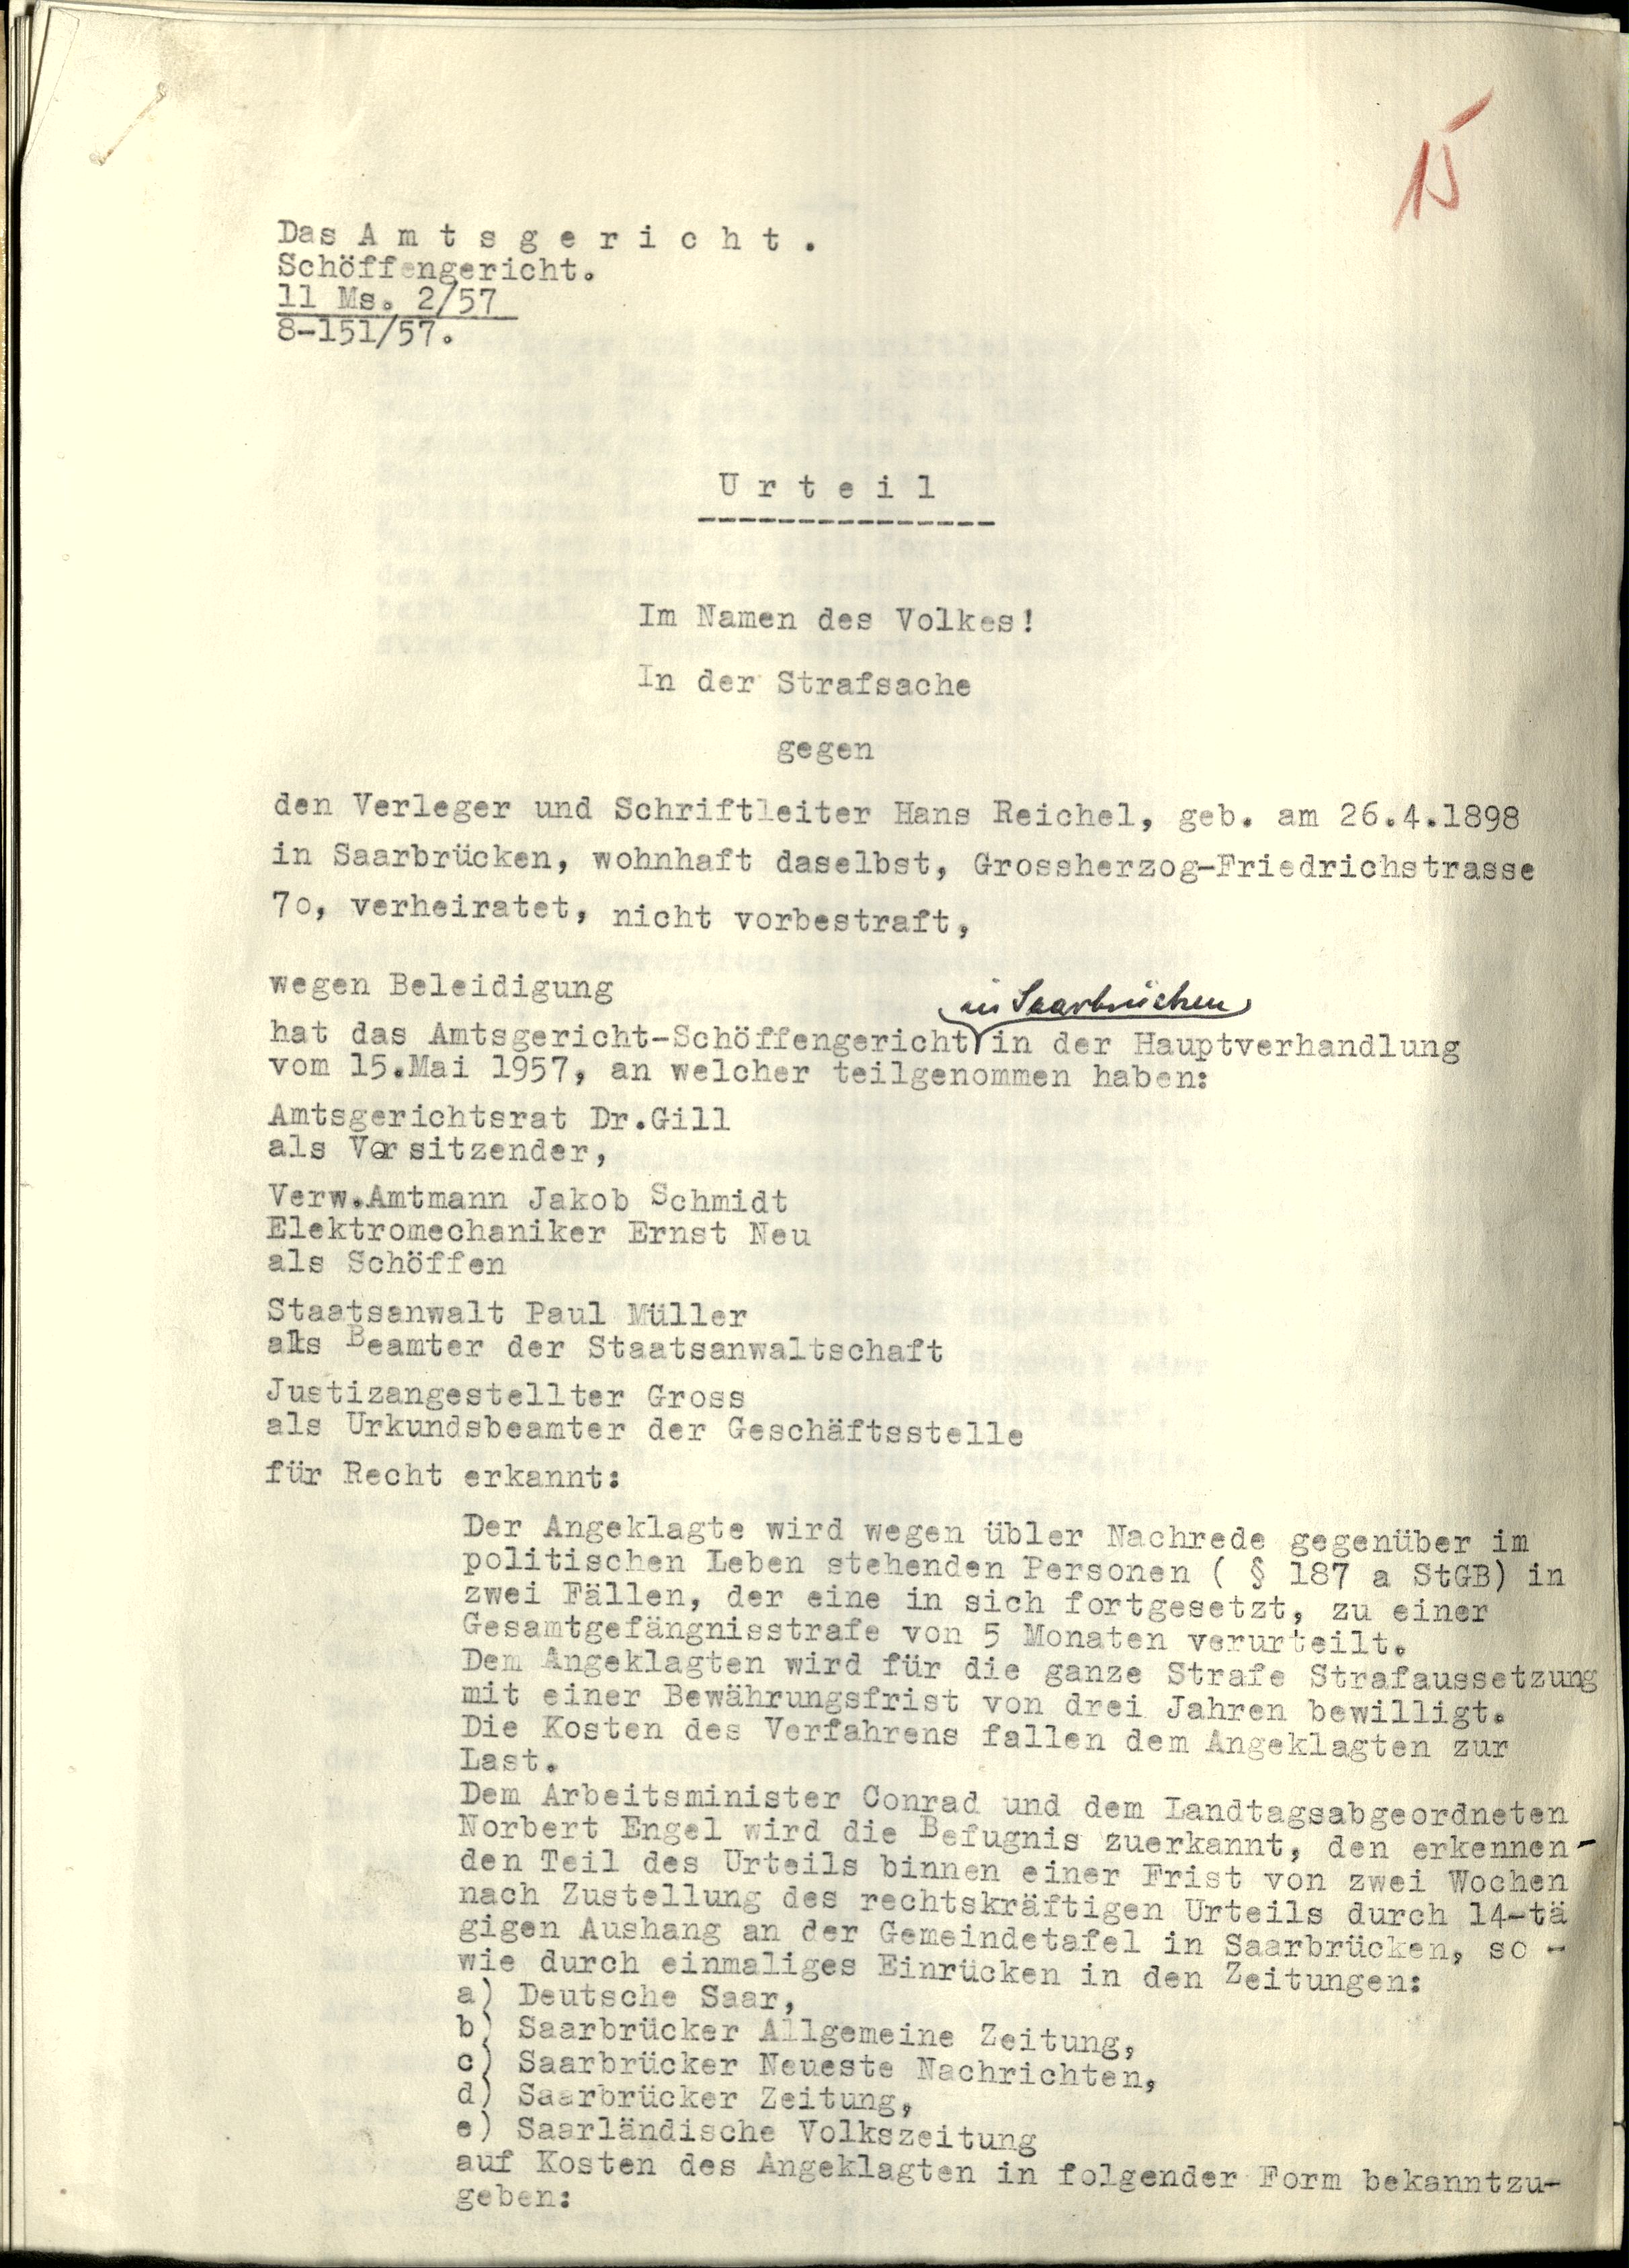 Urteil des Amtsgericht-Schöffengericht in Saarbrücken vom 15. Mai 1957 gegen Hans Reichel wegen Beleidigung.